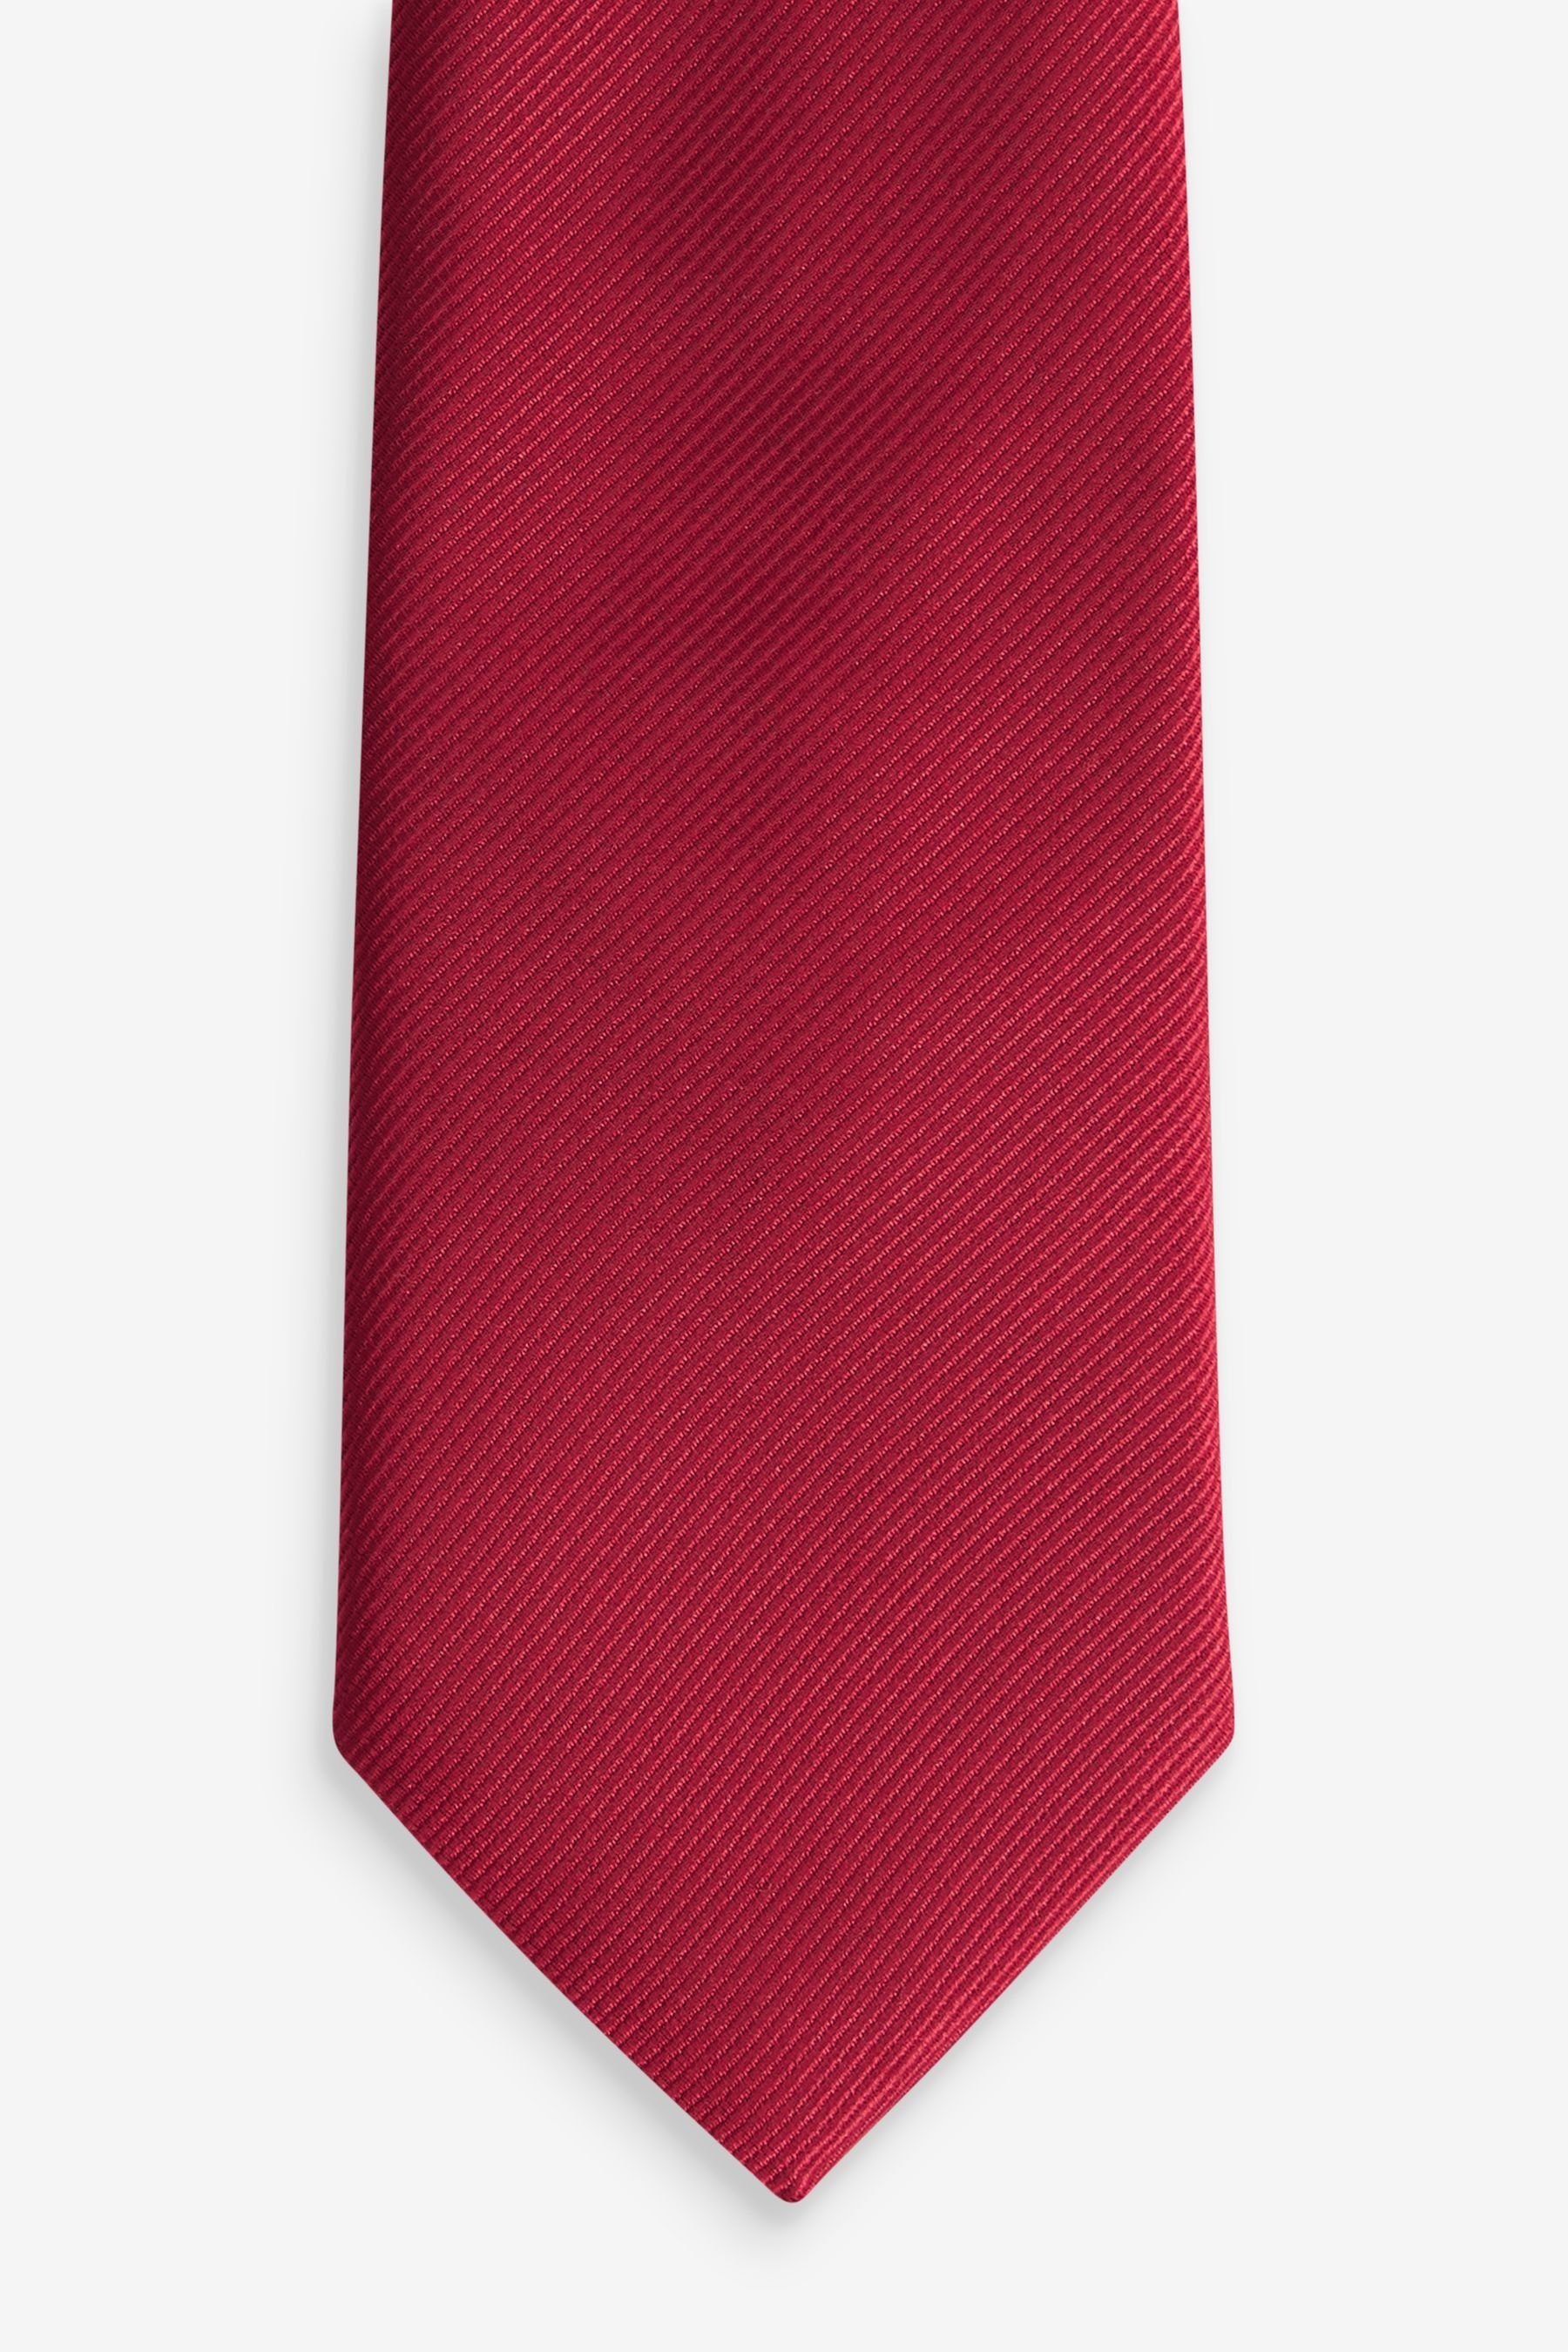 Next Krawatte Schmale Twill-Krawatte Red (1-St)